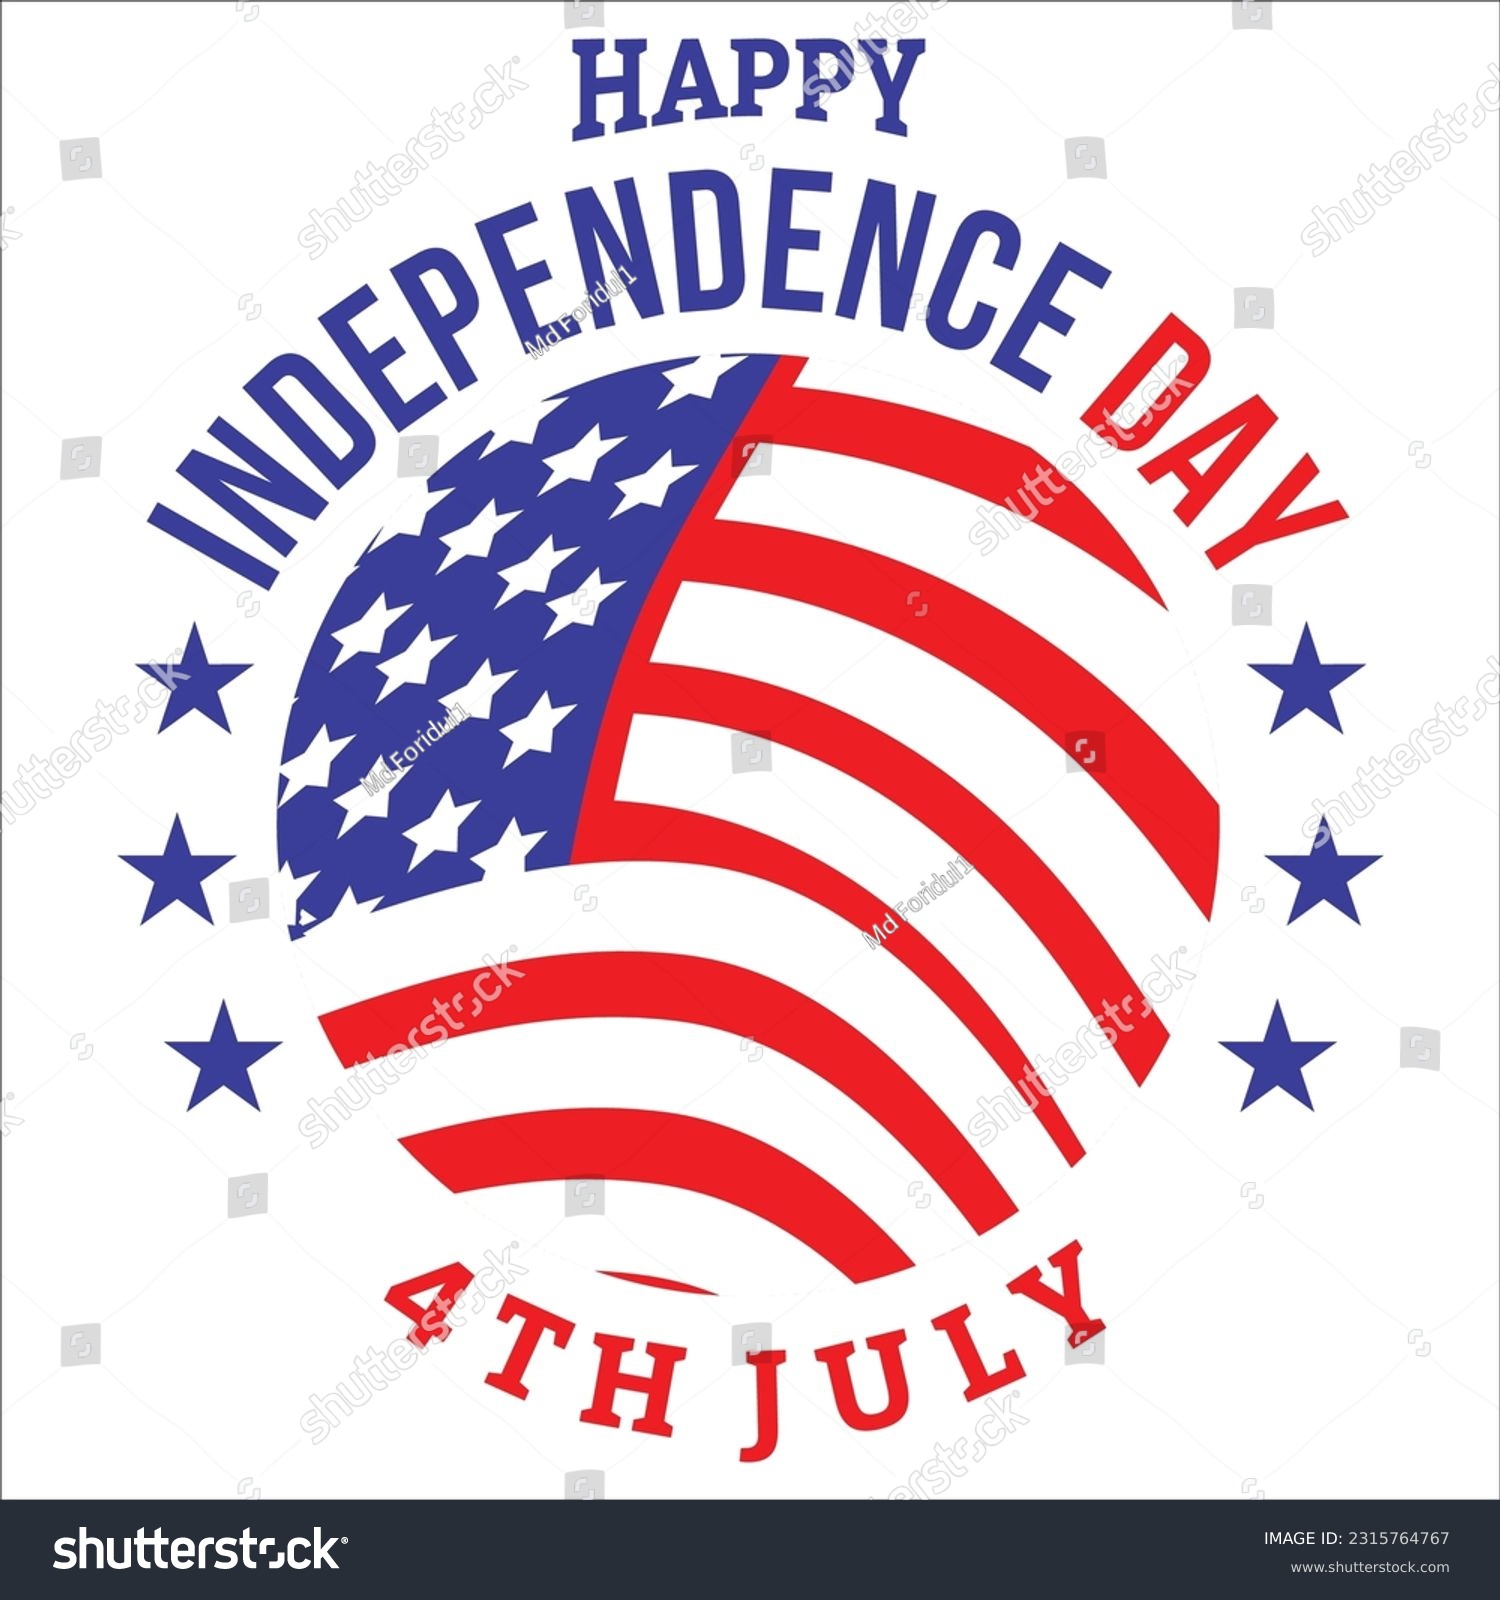 SVG of 4th of July svg, America svg, USA Flag svg, Patriotic, Independence Day Shirt svg